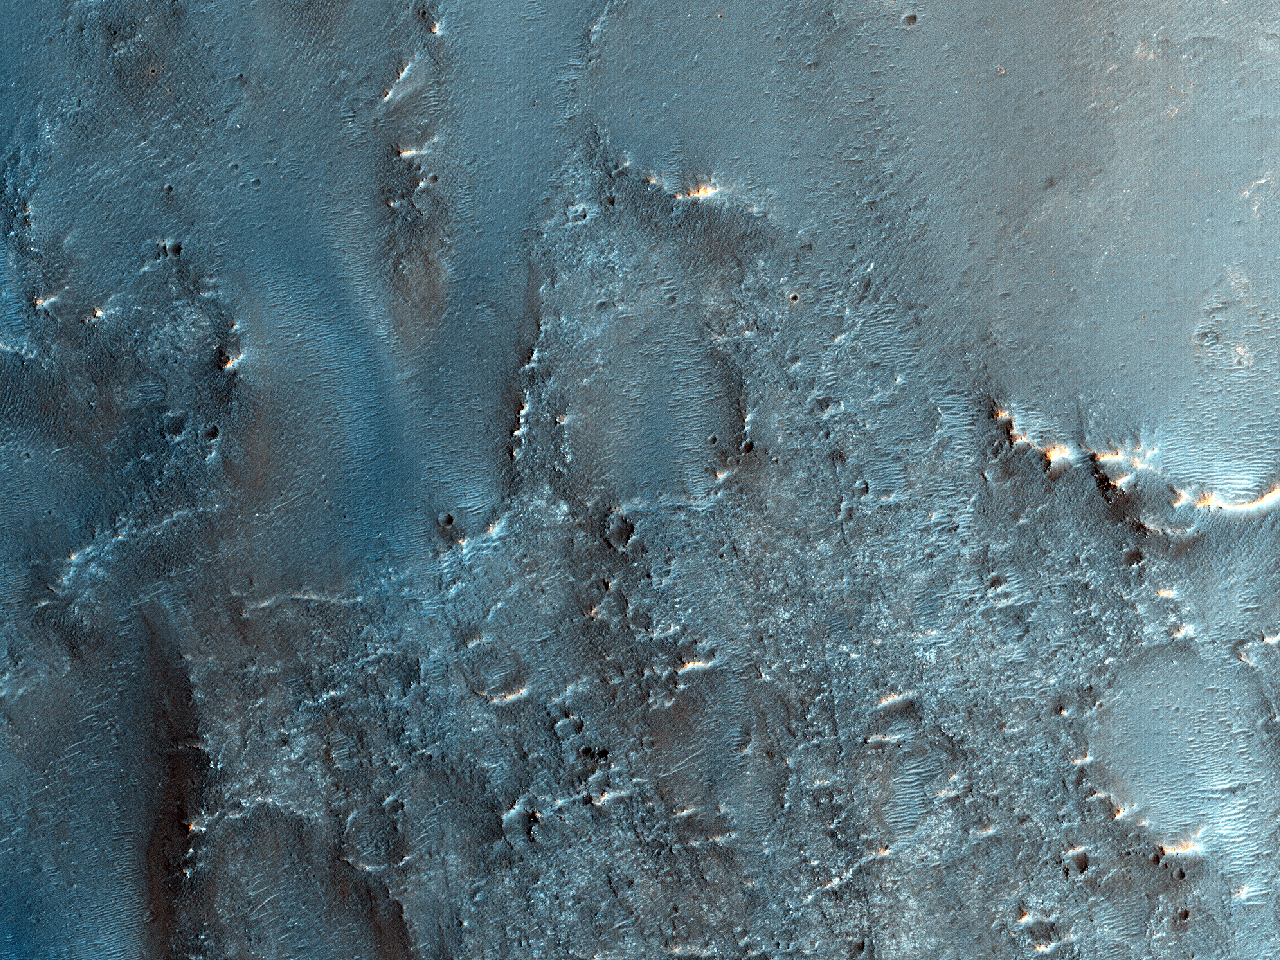 Terreno escuro em uma cratera próxima à região de Mawrth Vallis